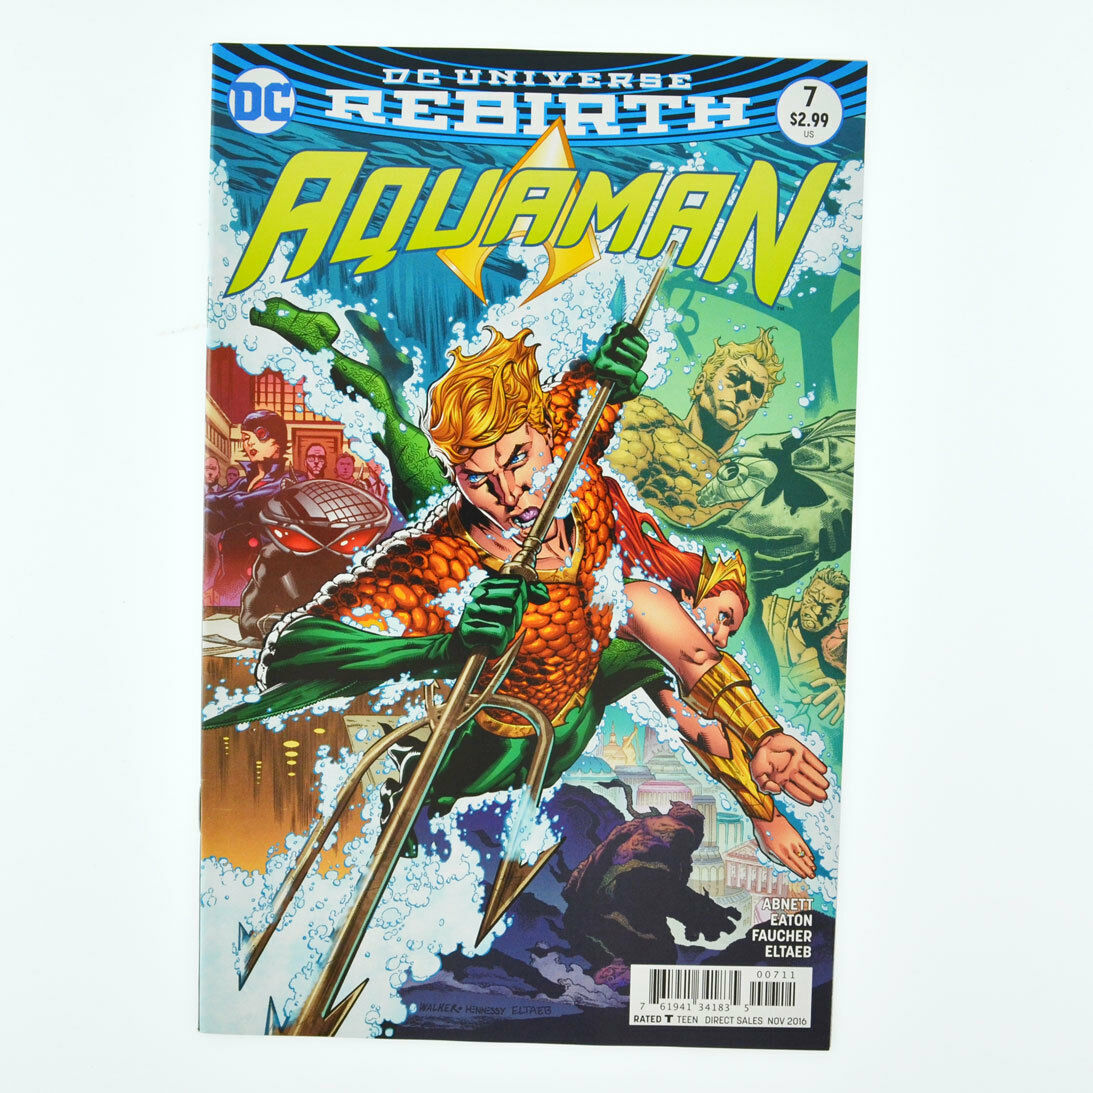 AQUAMAN #7 - DC Universe Rebirth Comics 2016 - VF+